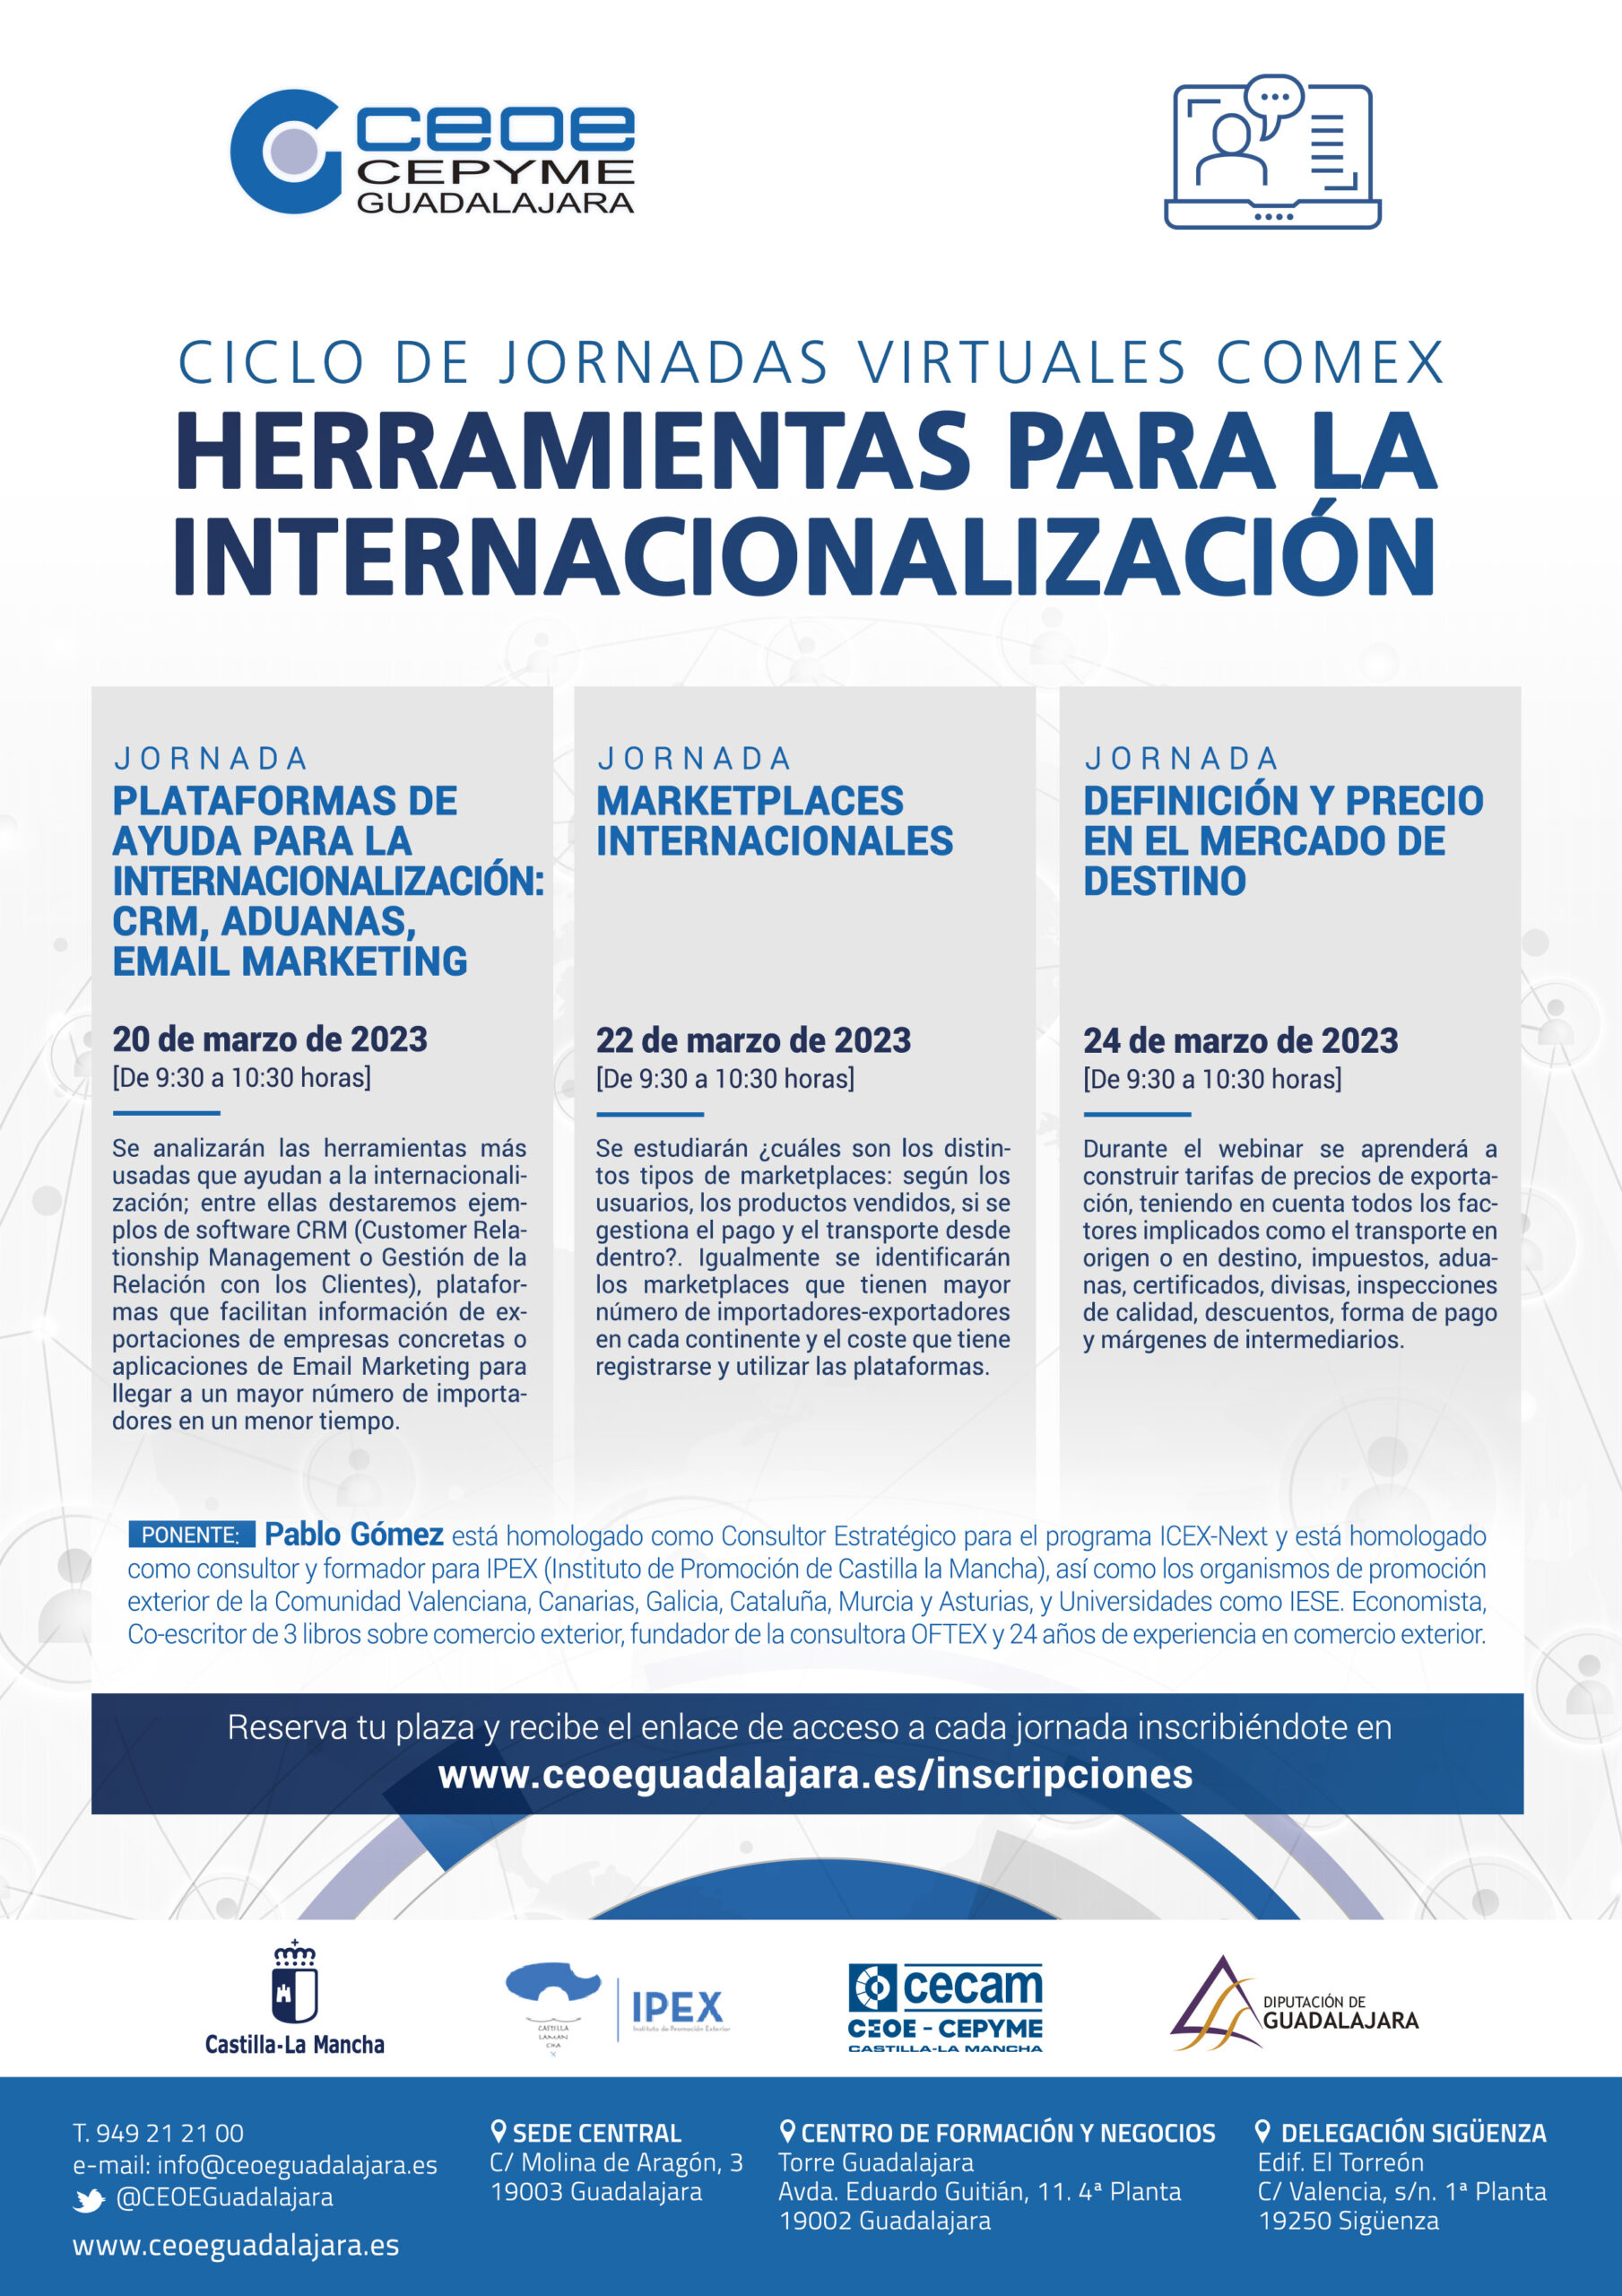 CEOE-CEPYME Guadalajara pone en marcha un nuevo ciclo de jornadas de comercio exterior